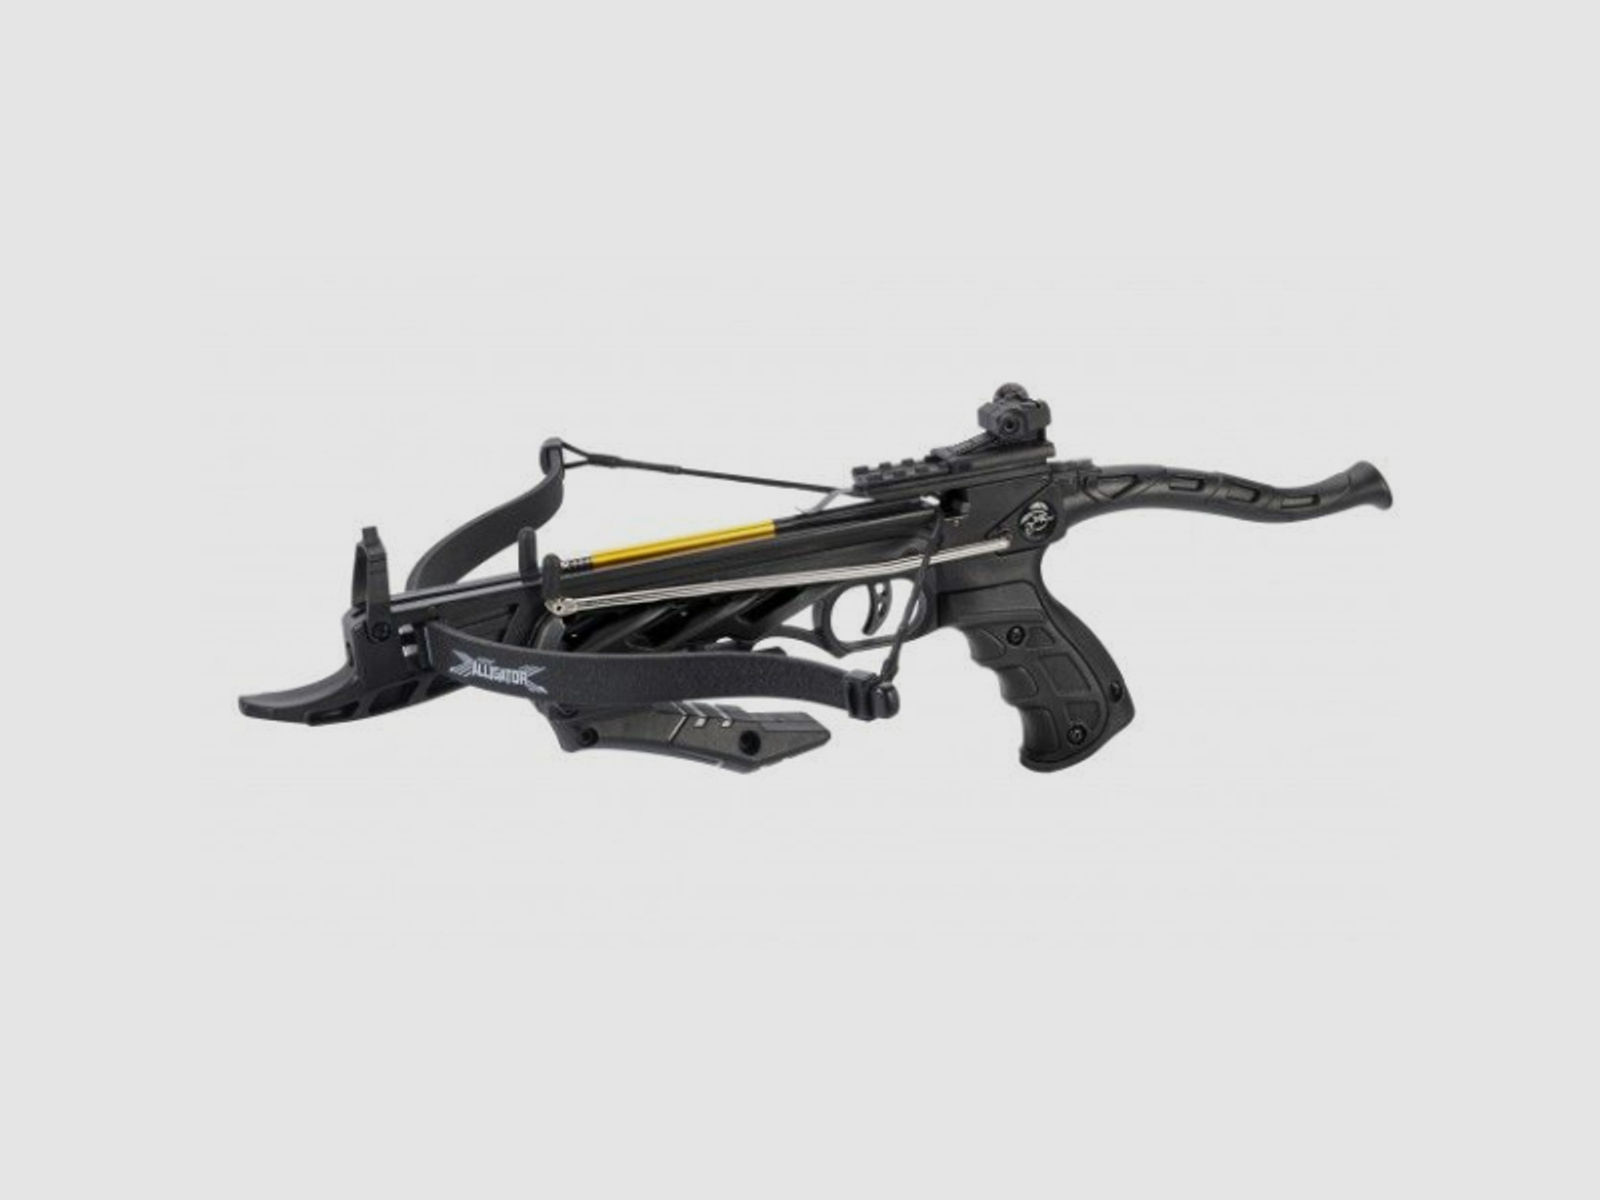 Pistolenarmbrust "ALLIGATOR I" Schwarz - 80 lbs / 35kg, mit Selbstspannmechanismus